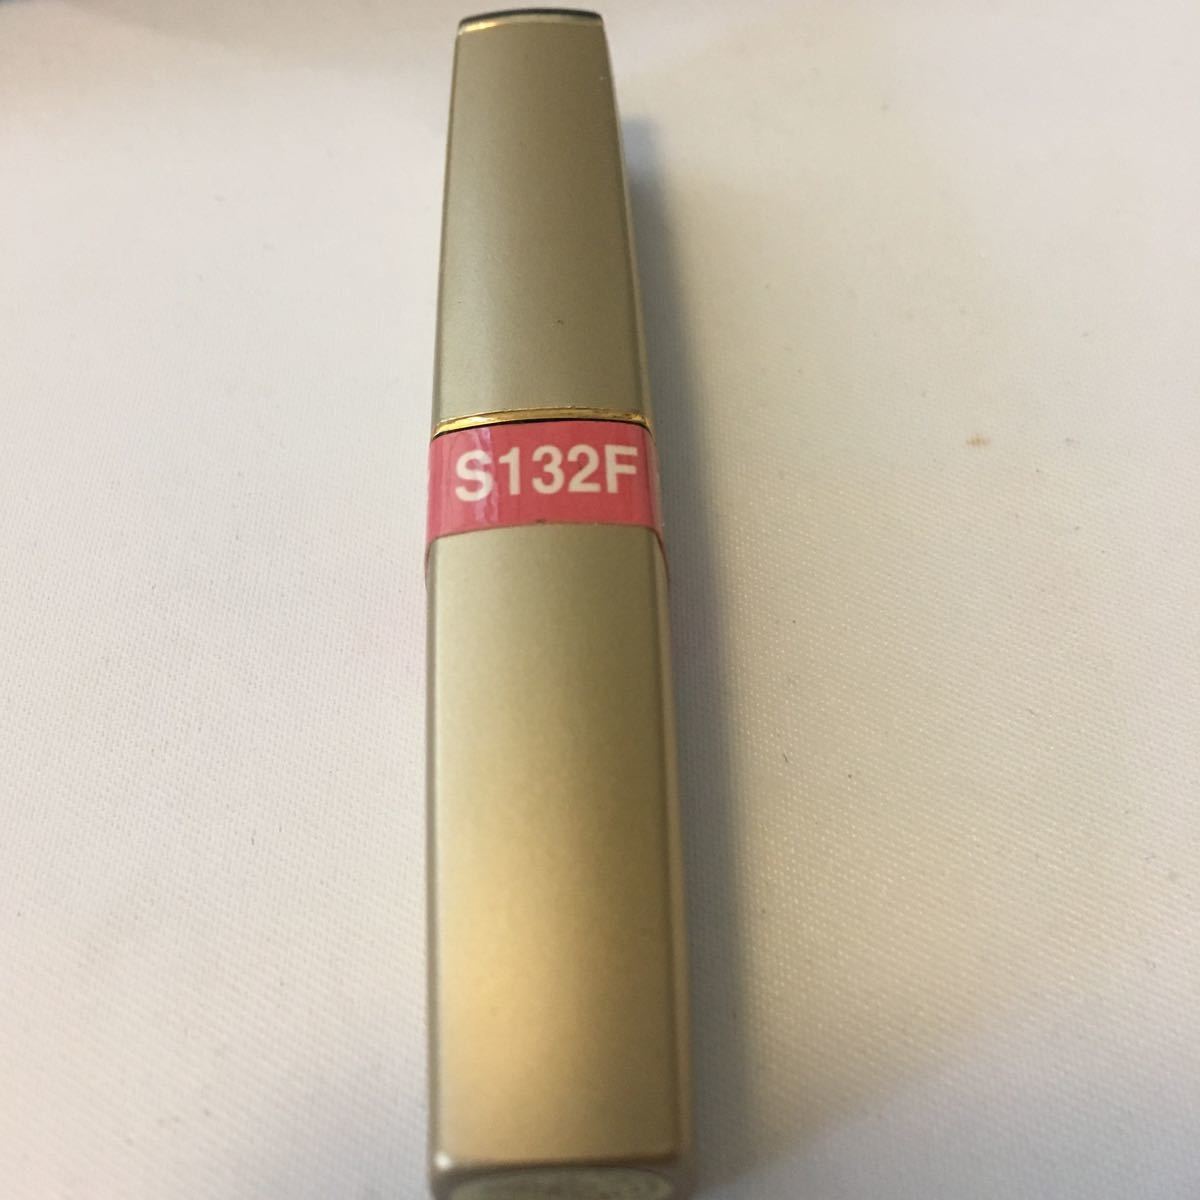 S132F* Max Factor Inter National lip silk s* Max Factor lipstick lip * lip cream .... lipstick dry . rare goods 